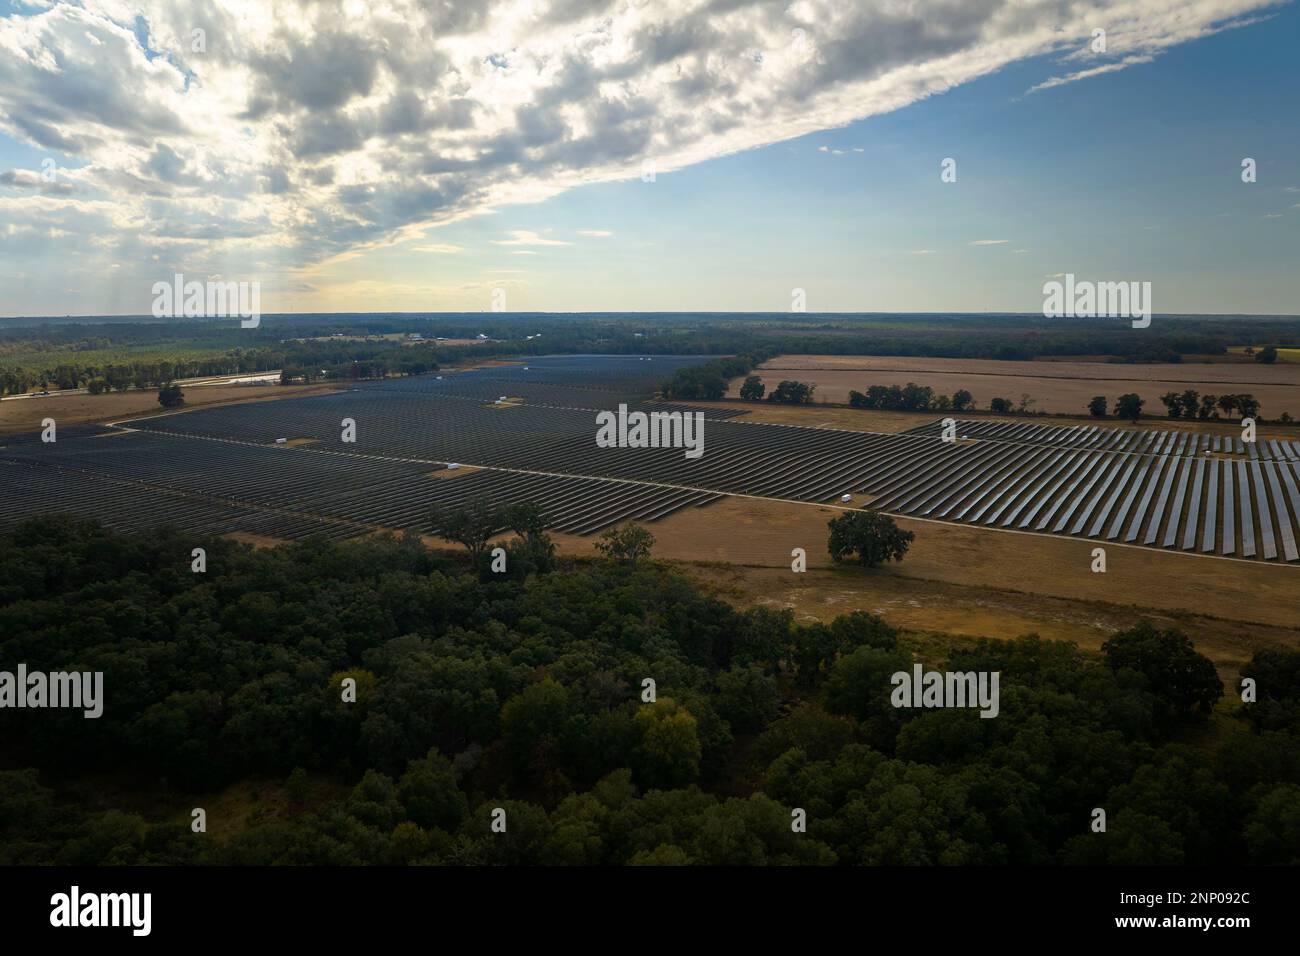 Luftaufnahme eines großen nachhaltigen Elektrokraftwerks mit Reihen von Photovoltaik-Solarmodulen zur Erzeugung sauberer elektrischer Energie. Konzept der Erneuerung Stockfoto